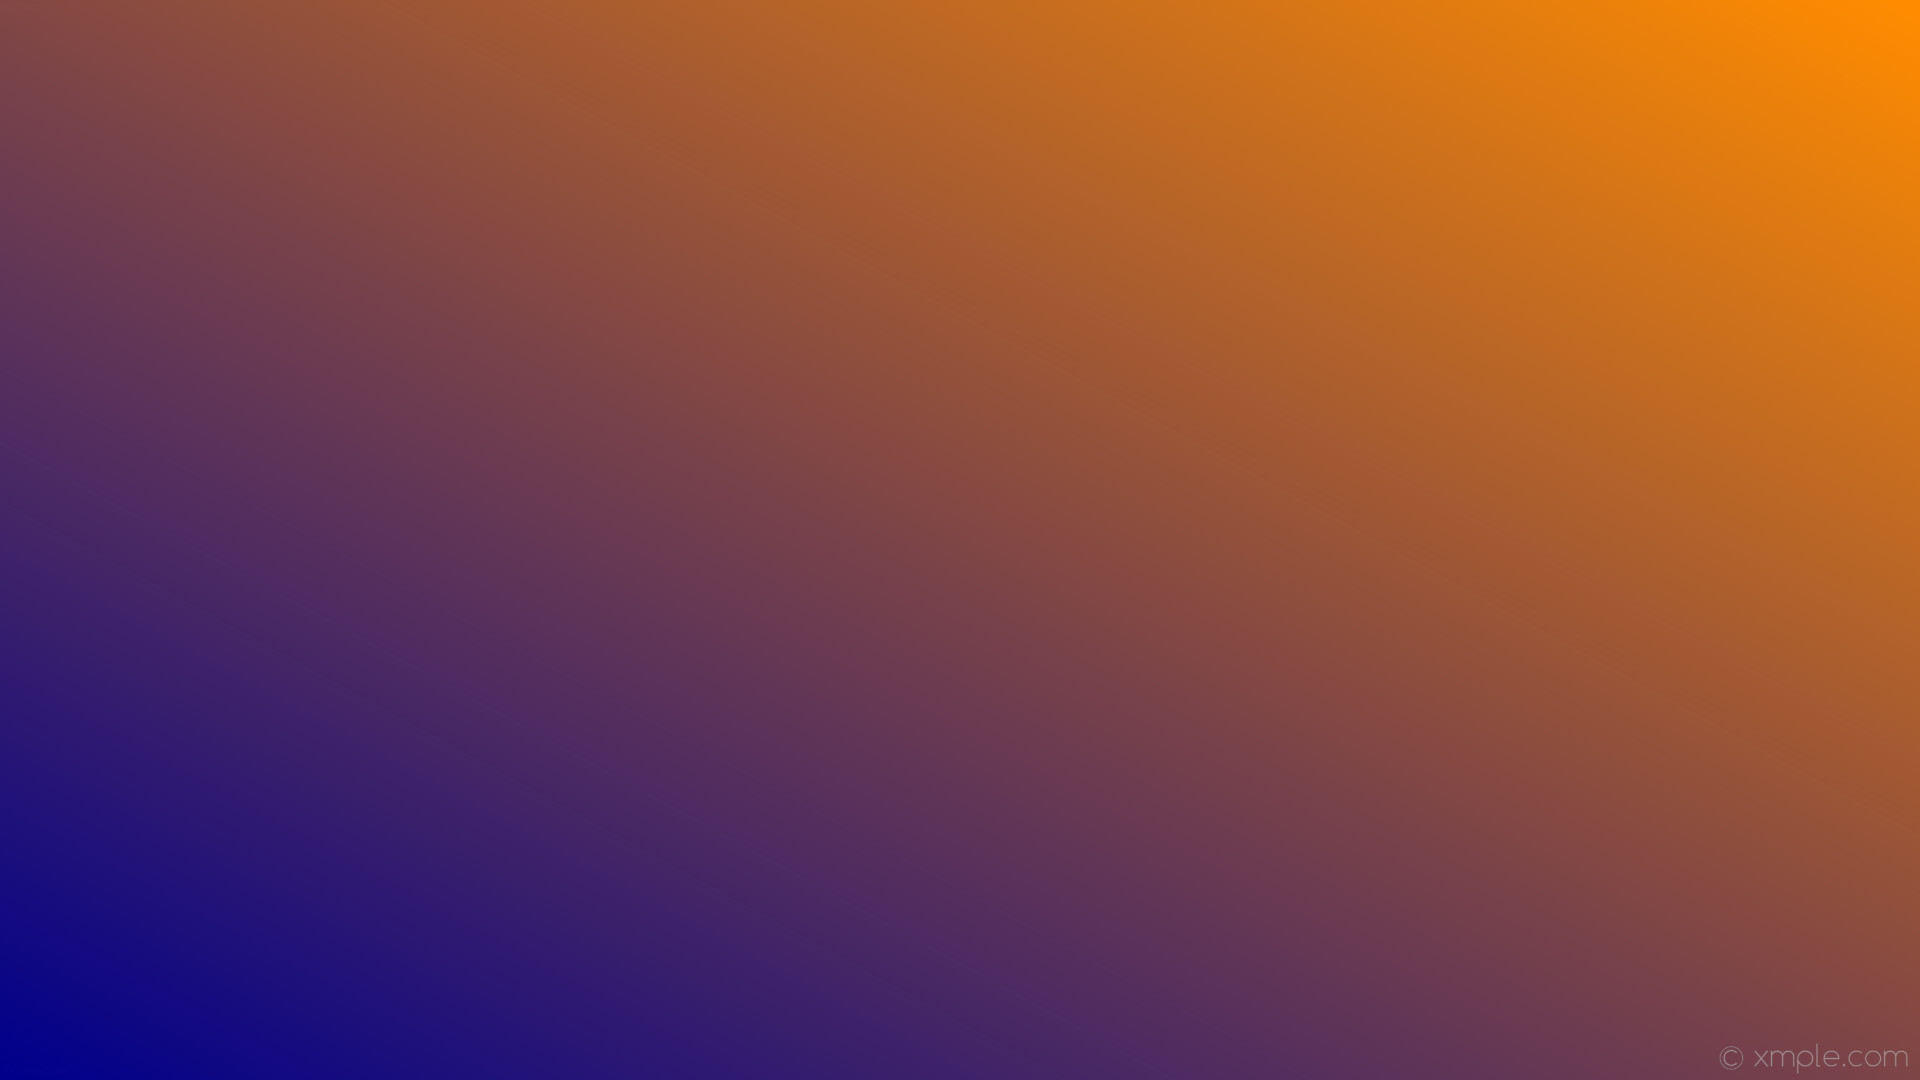 ダークオレンジの壁紙,紫の,青い,バイオレット,オレンジ,黄